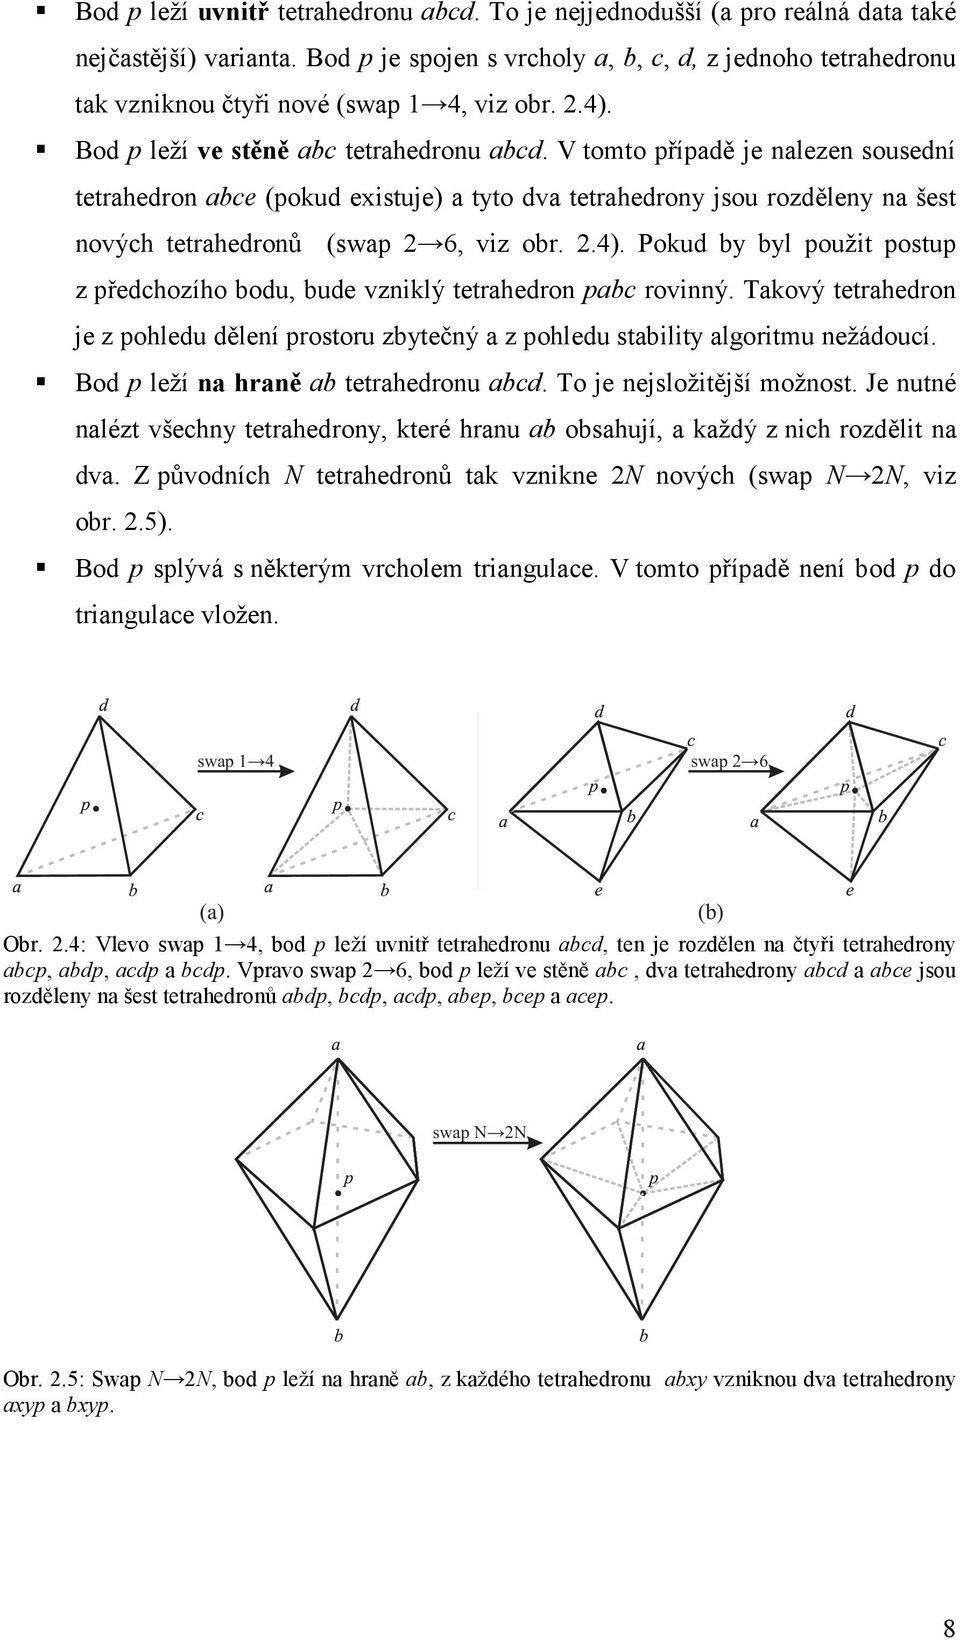 V tomto případě je nalezen sousední tetrahedron abce (pokud existuje) a tyto dva tetrahedrony jsou rozděleny na šest nových tetrahedronů (swap 2 6, viz obr. 2.4).